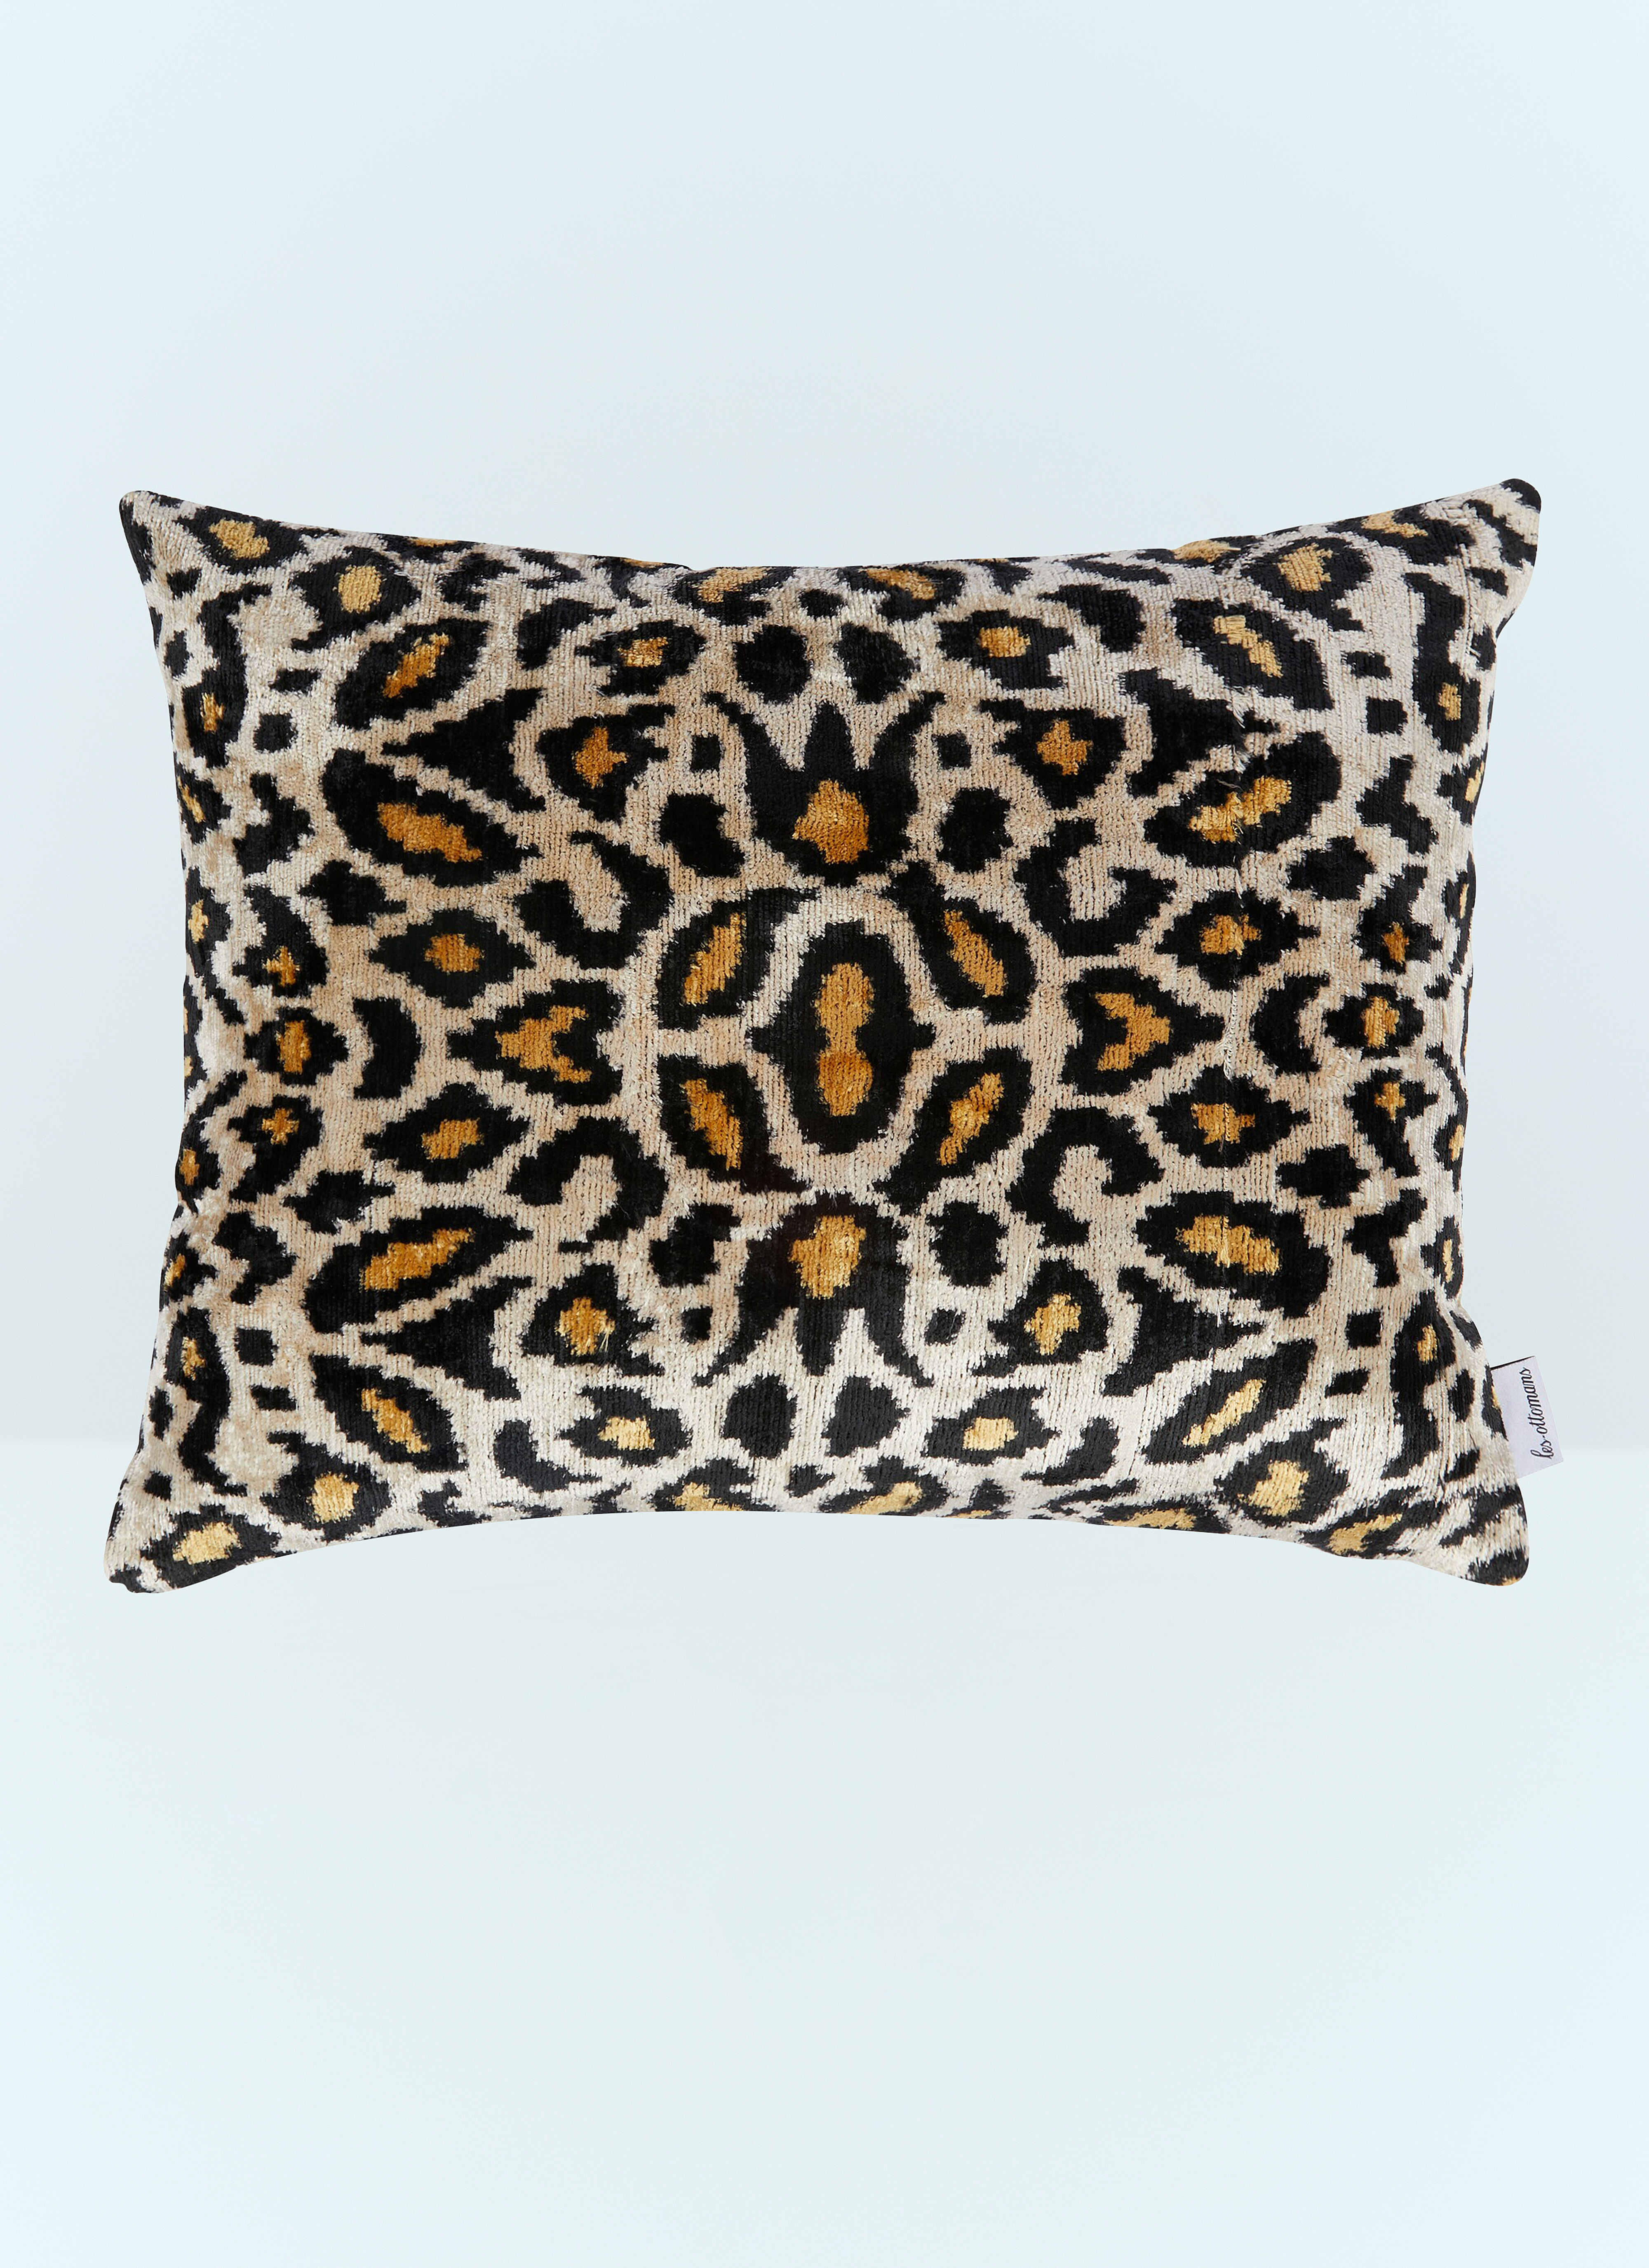 Polspotten Leopard Print Velvet Cushion Pink wps0691160